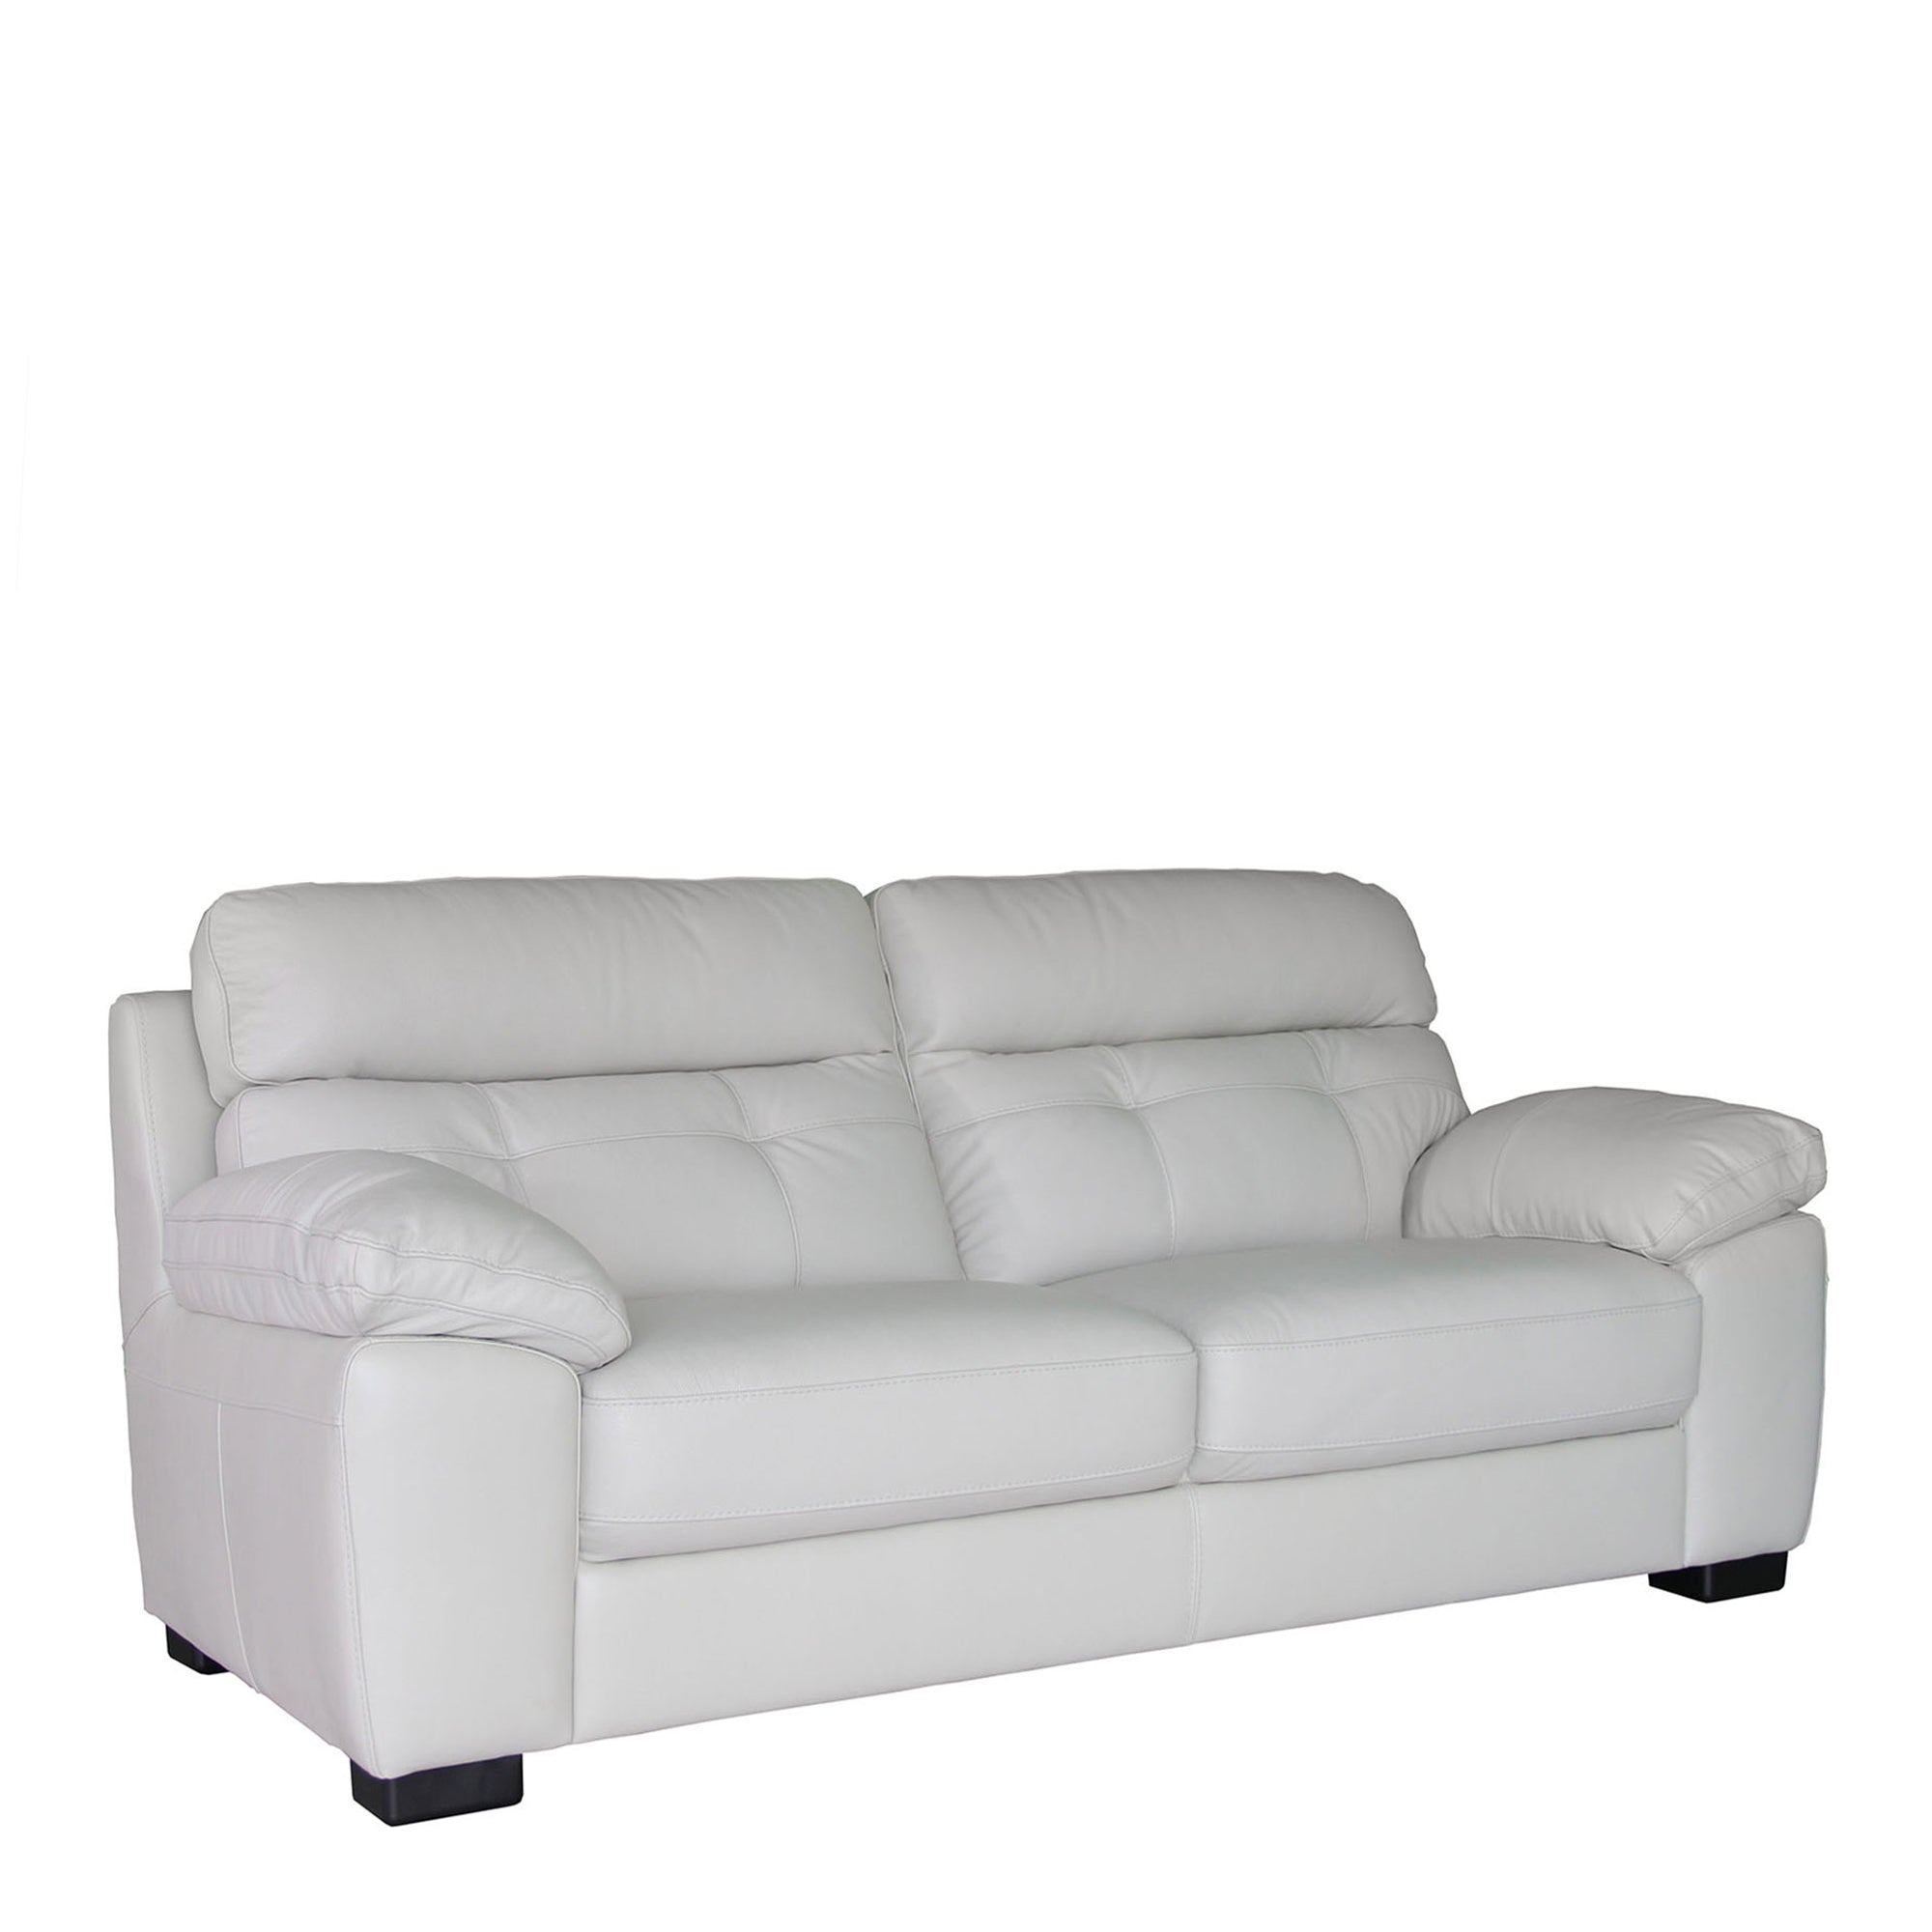 2.5 Seat Sofa In Leather Cat 15 H/Splt